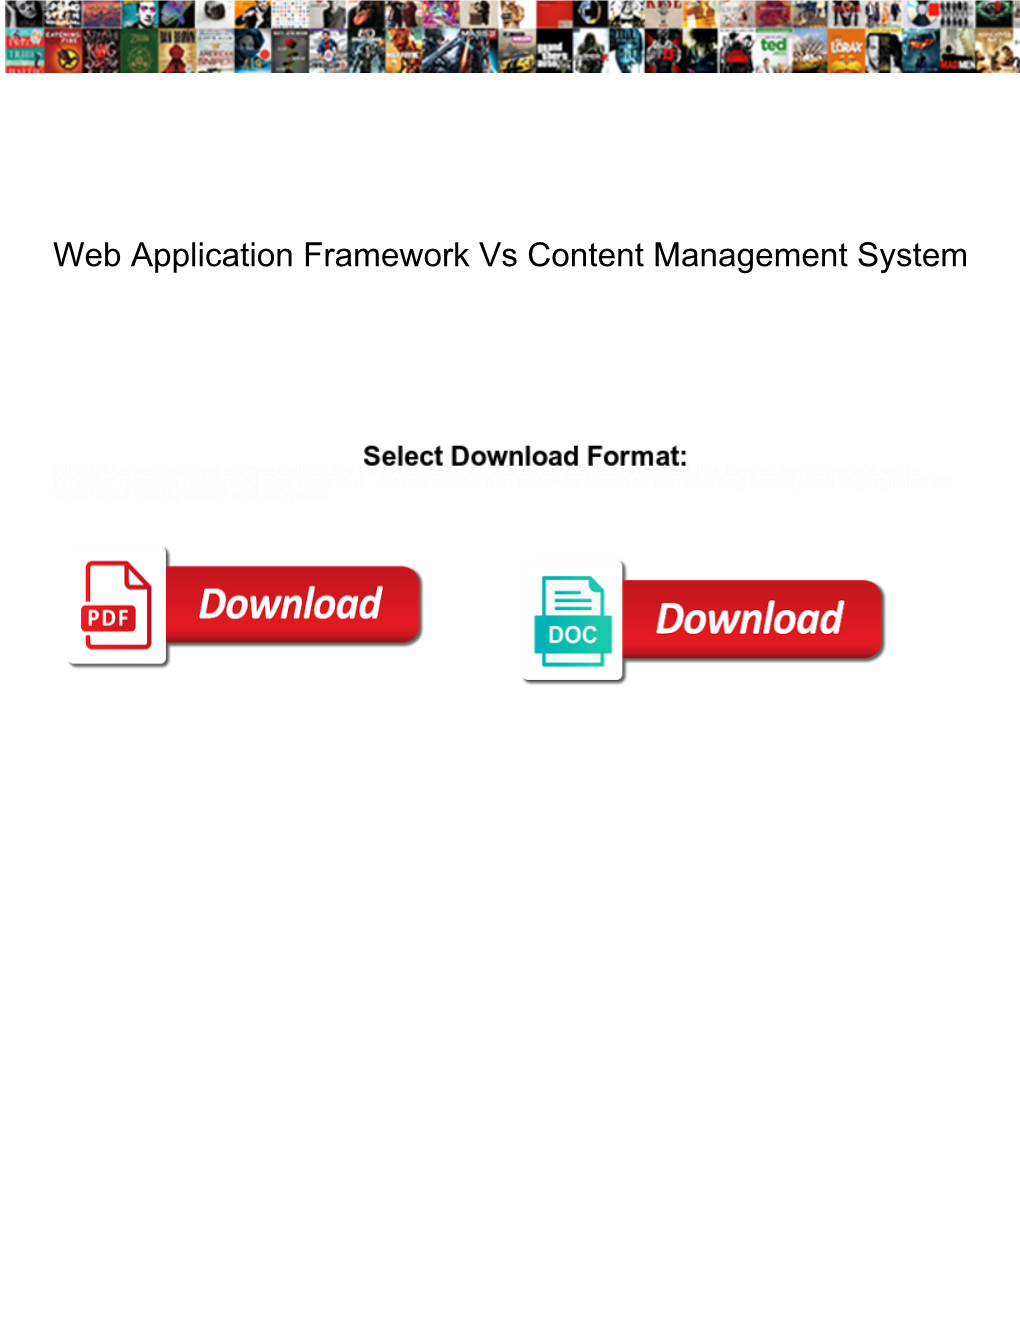 Web Application Framework Vs Content Management System